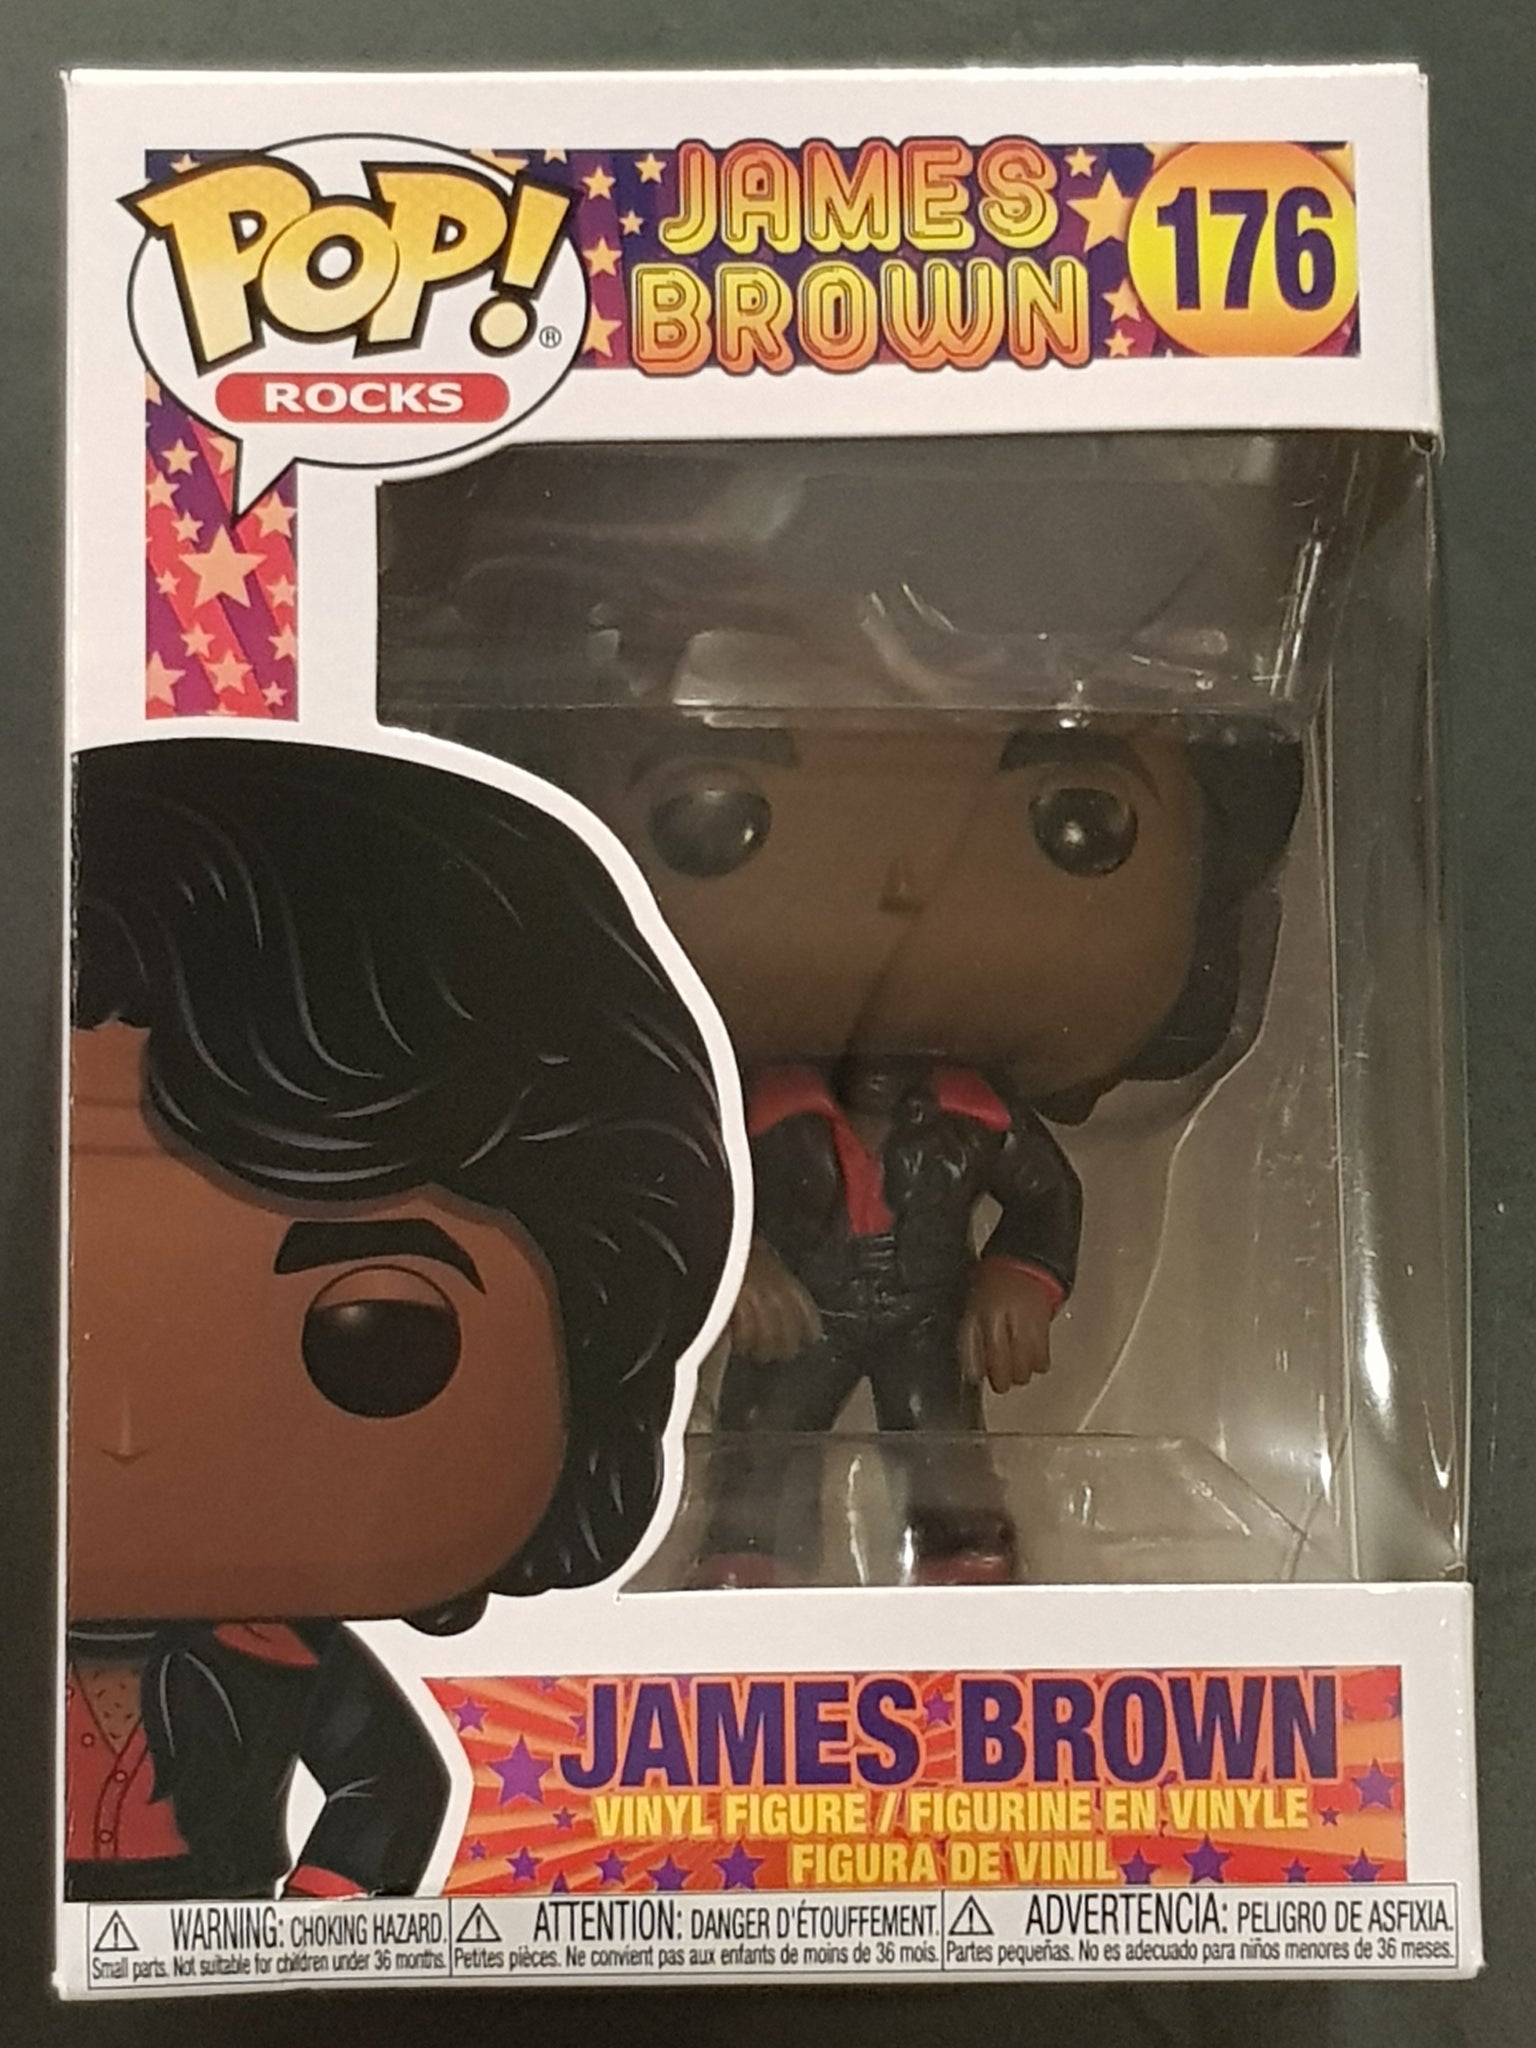 Funko Pop! James Brown #176 Vinyl Figure